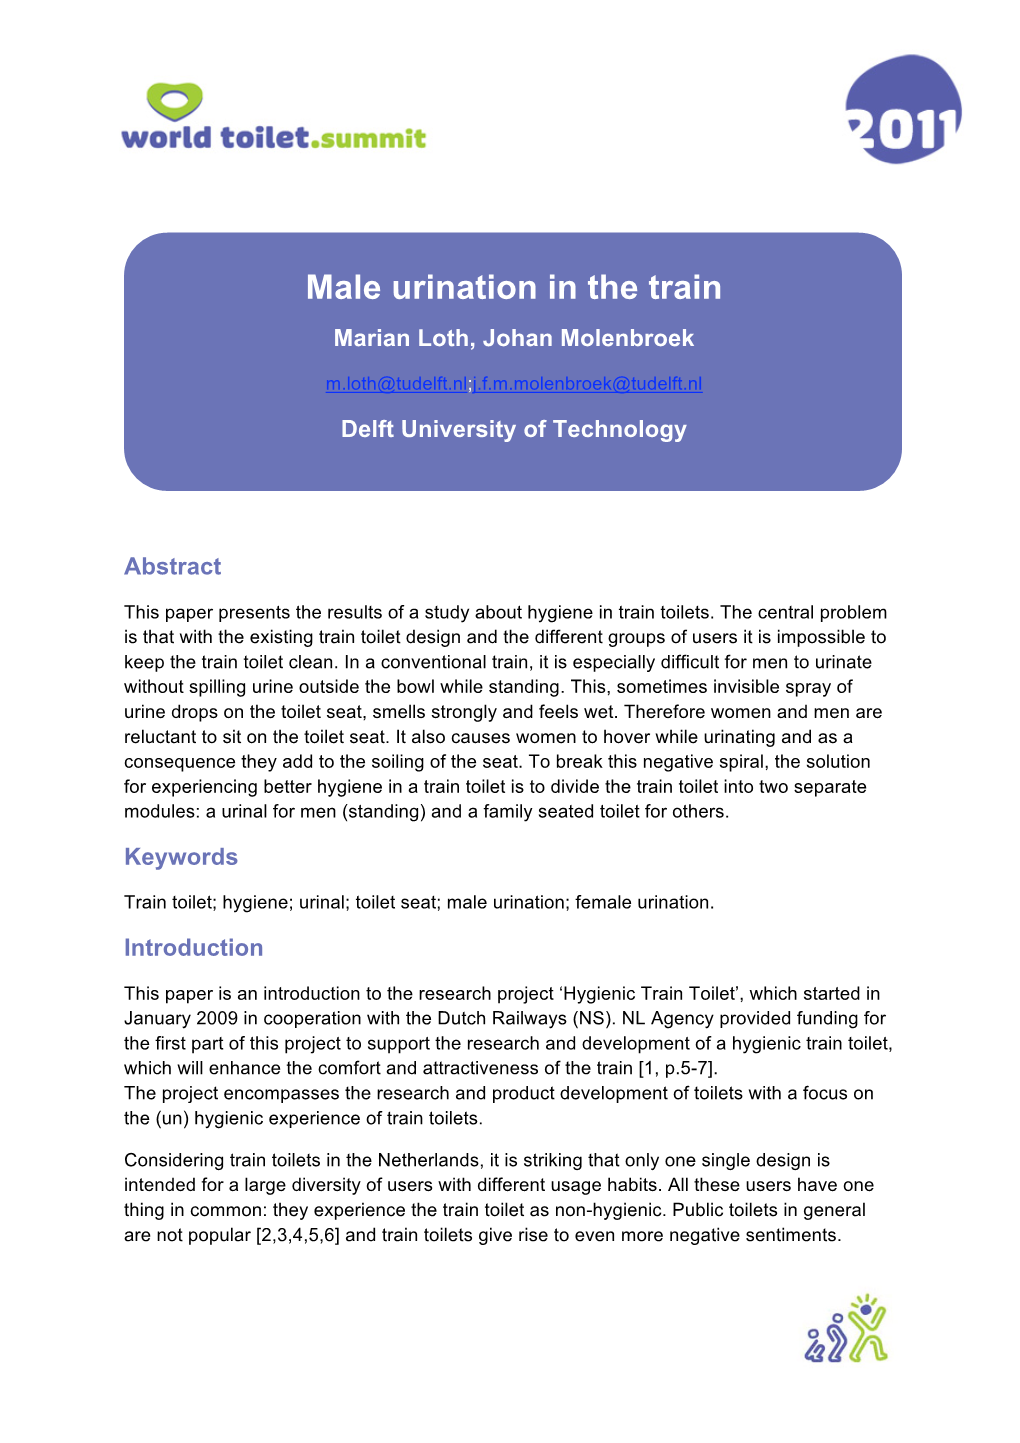 Male Urination in the Train